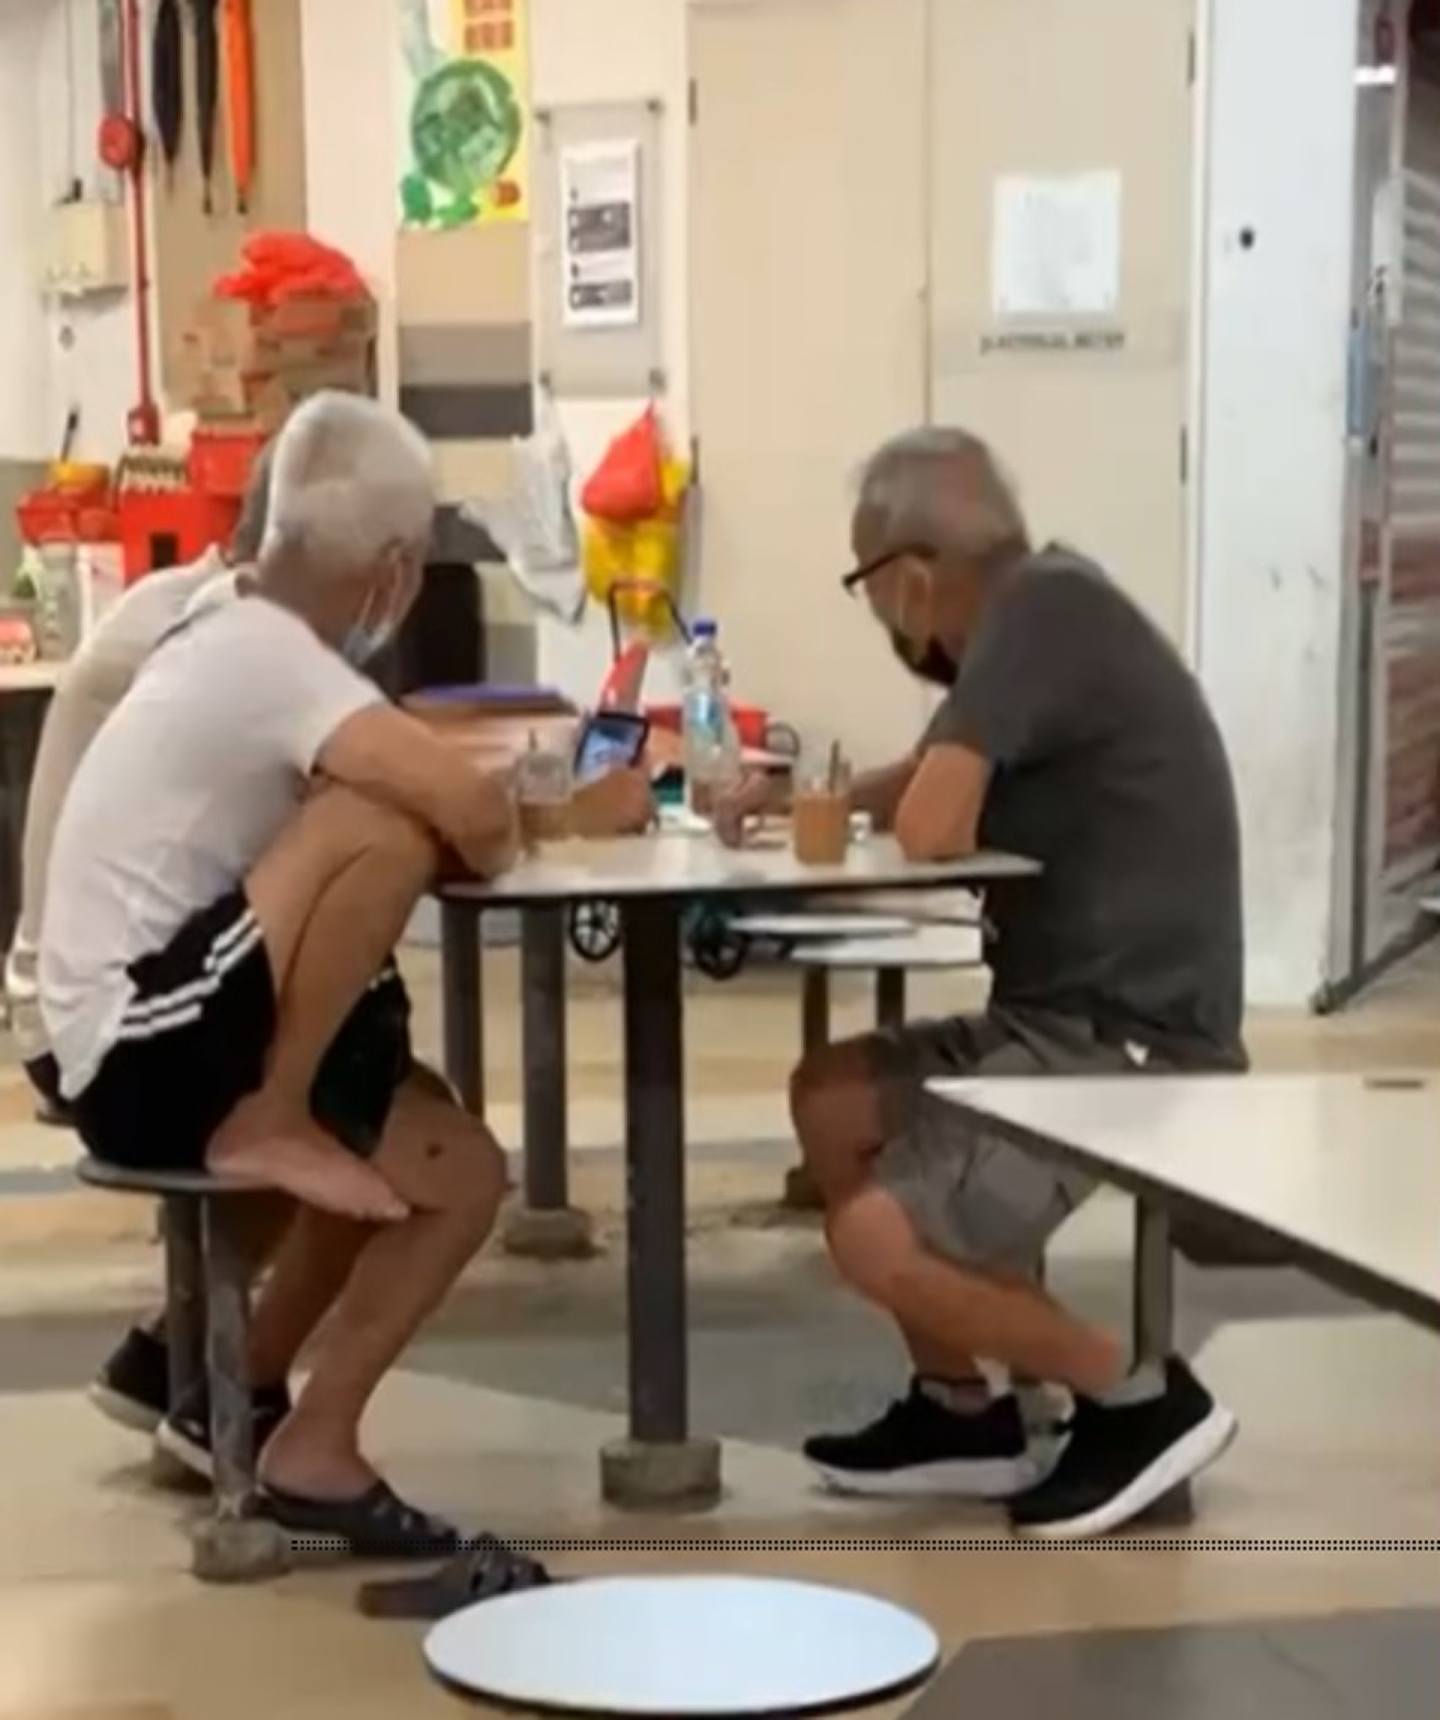 3名老翁在1张长桌上围坐，观赏手机内的影片并看得非常入神，而手机发出的声响却令人异常尴尬，原来他们正公然地播放成人影片。 （影片截图）